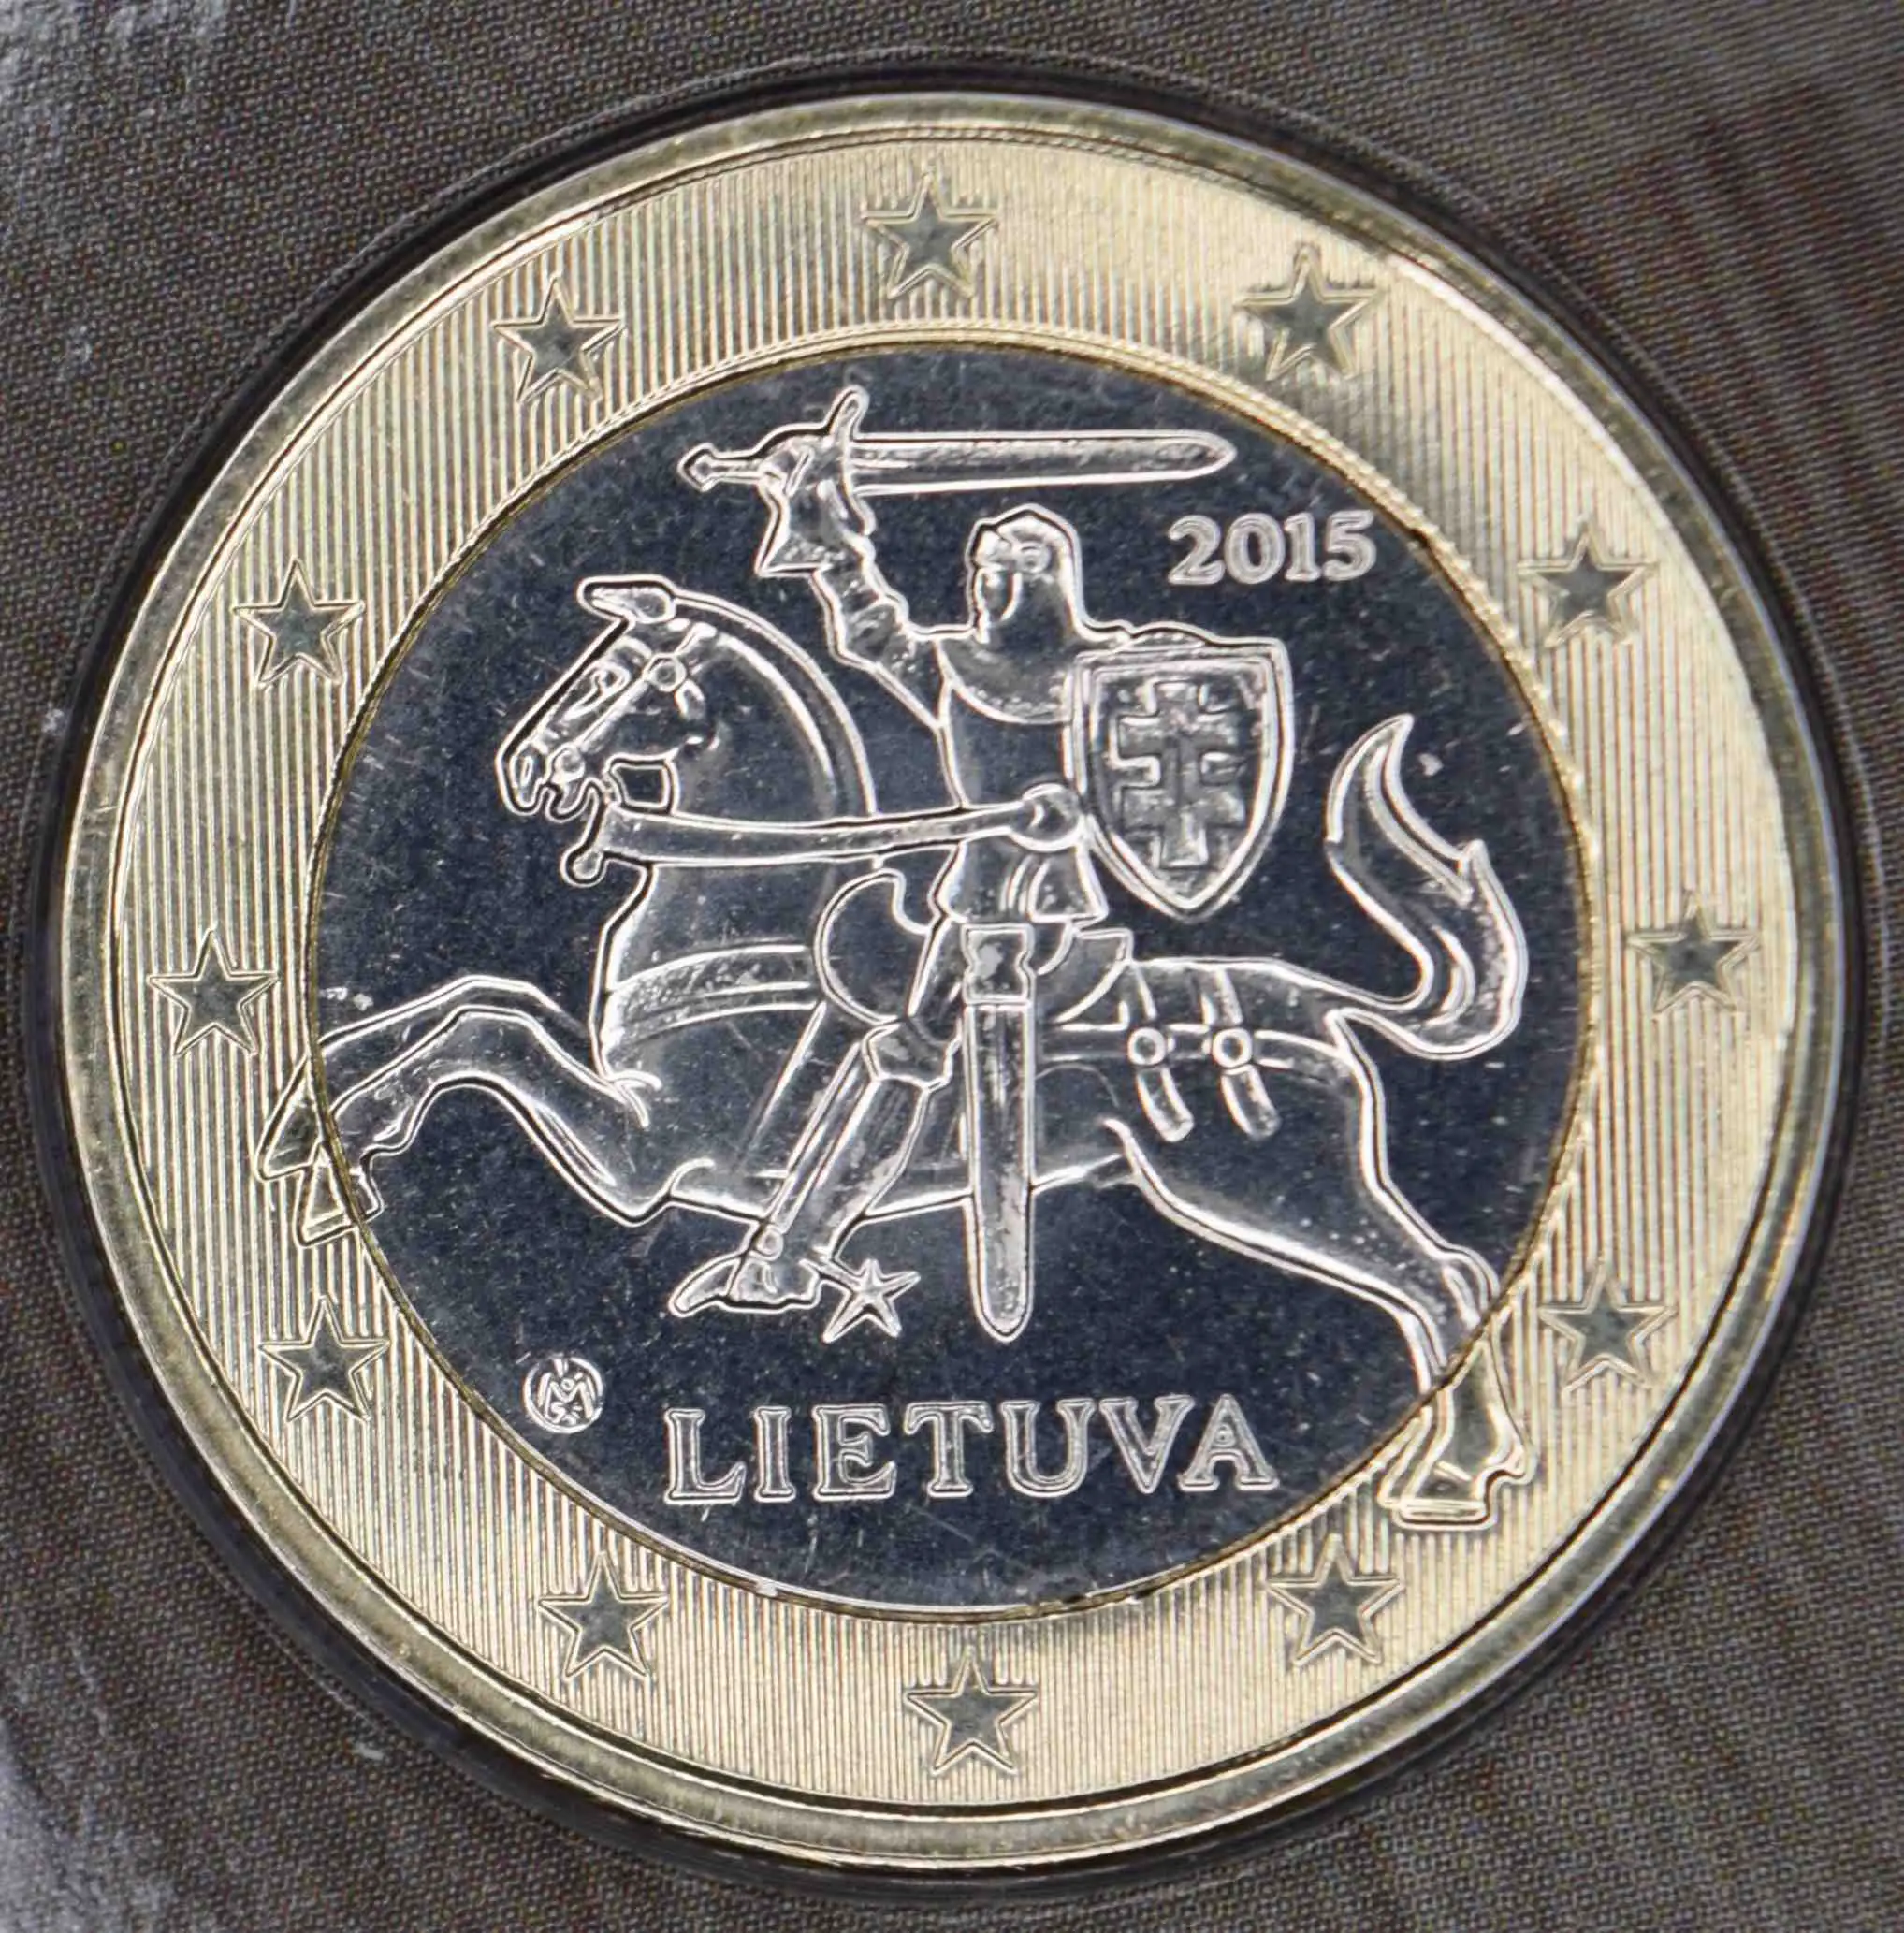 Litauen 1 Euro Münze 2015 - euro-muenzen.tv - Der Online Euromünzen Katalog